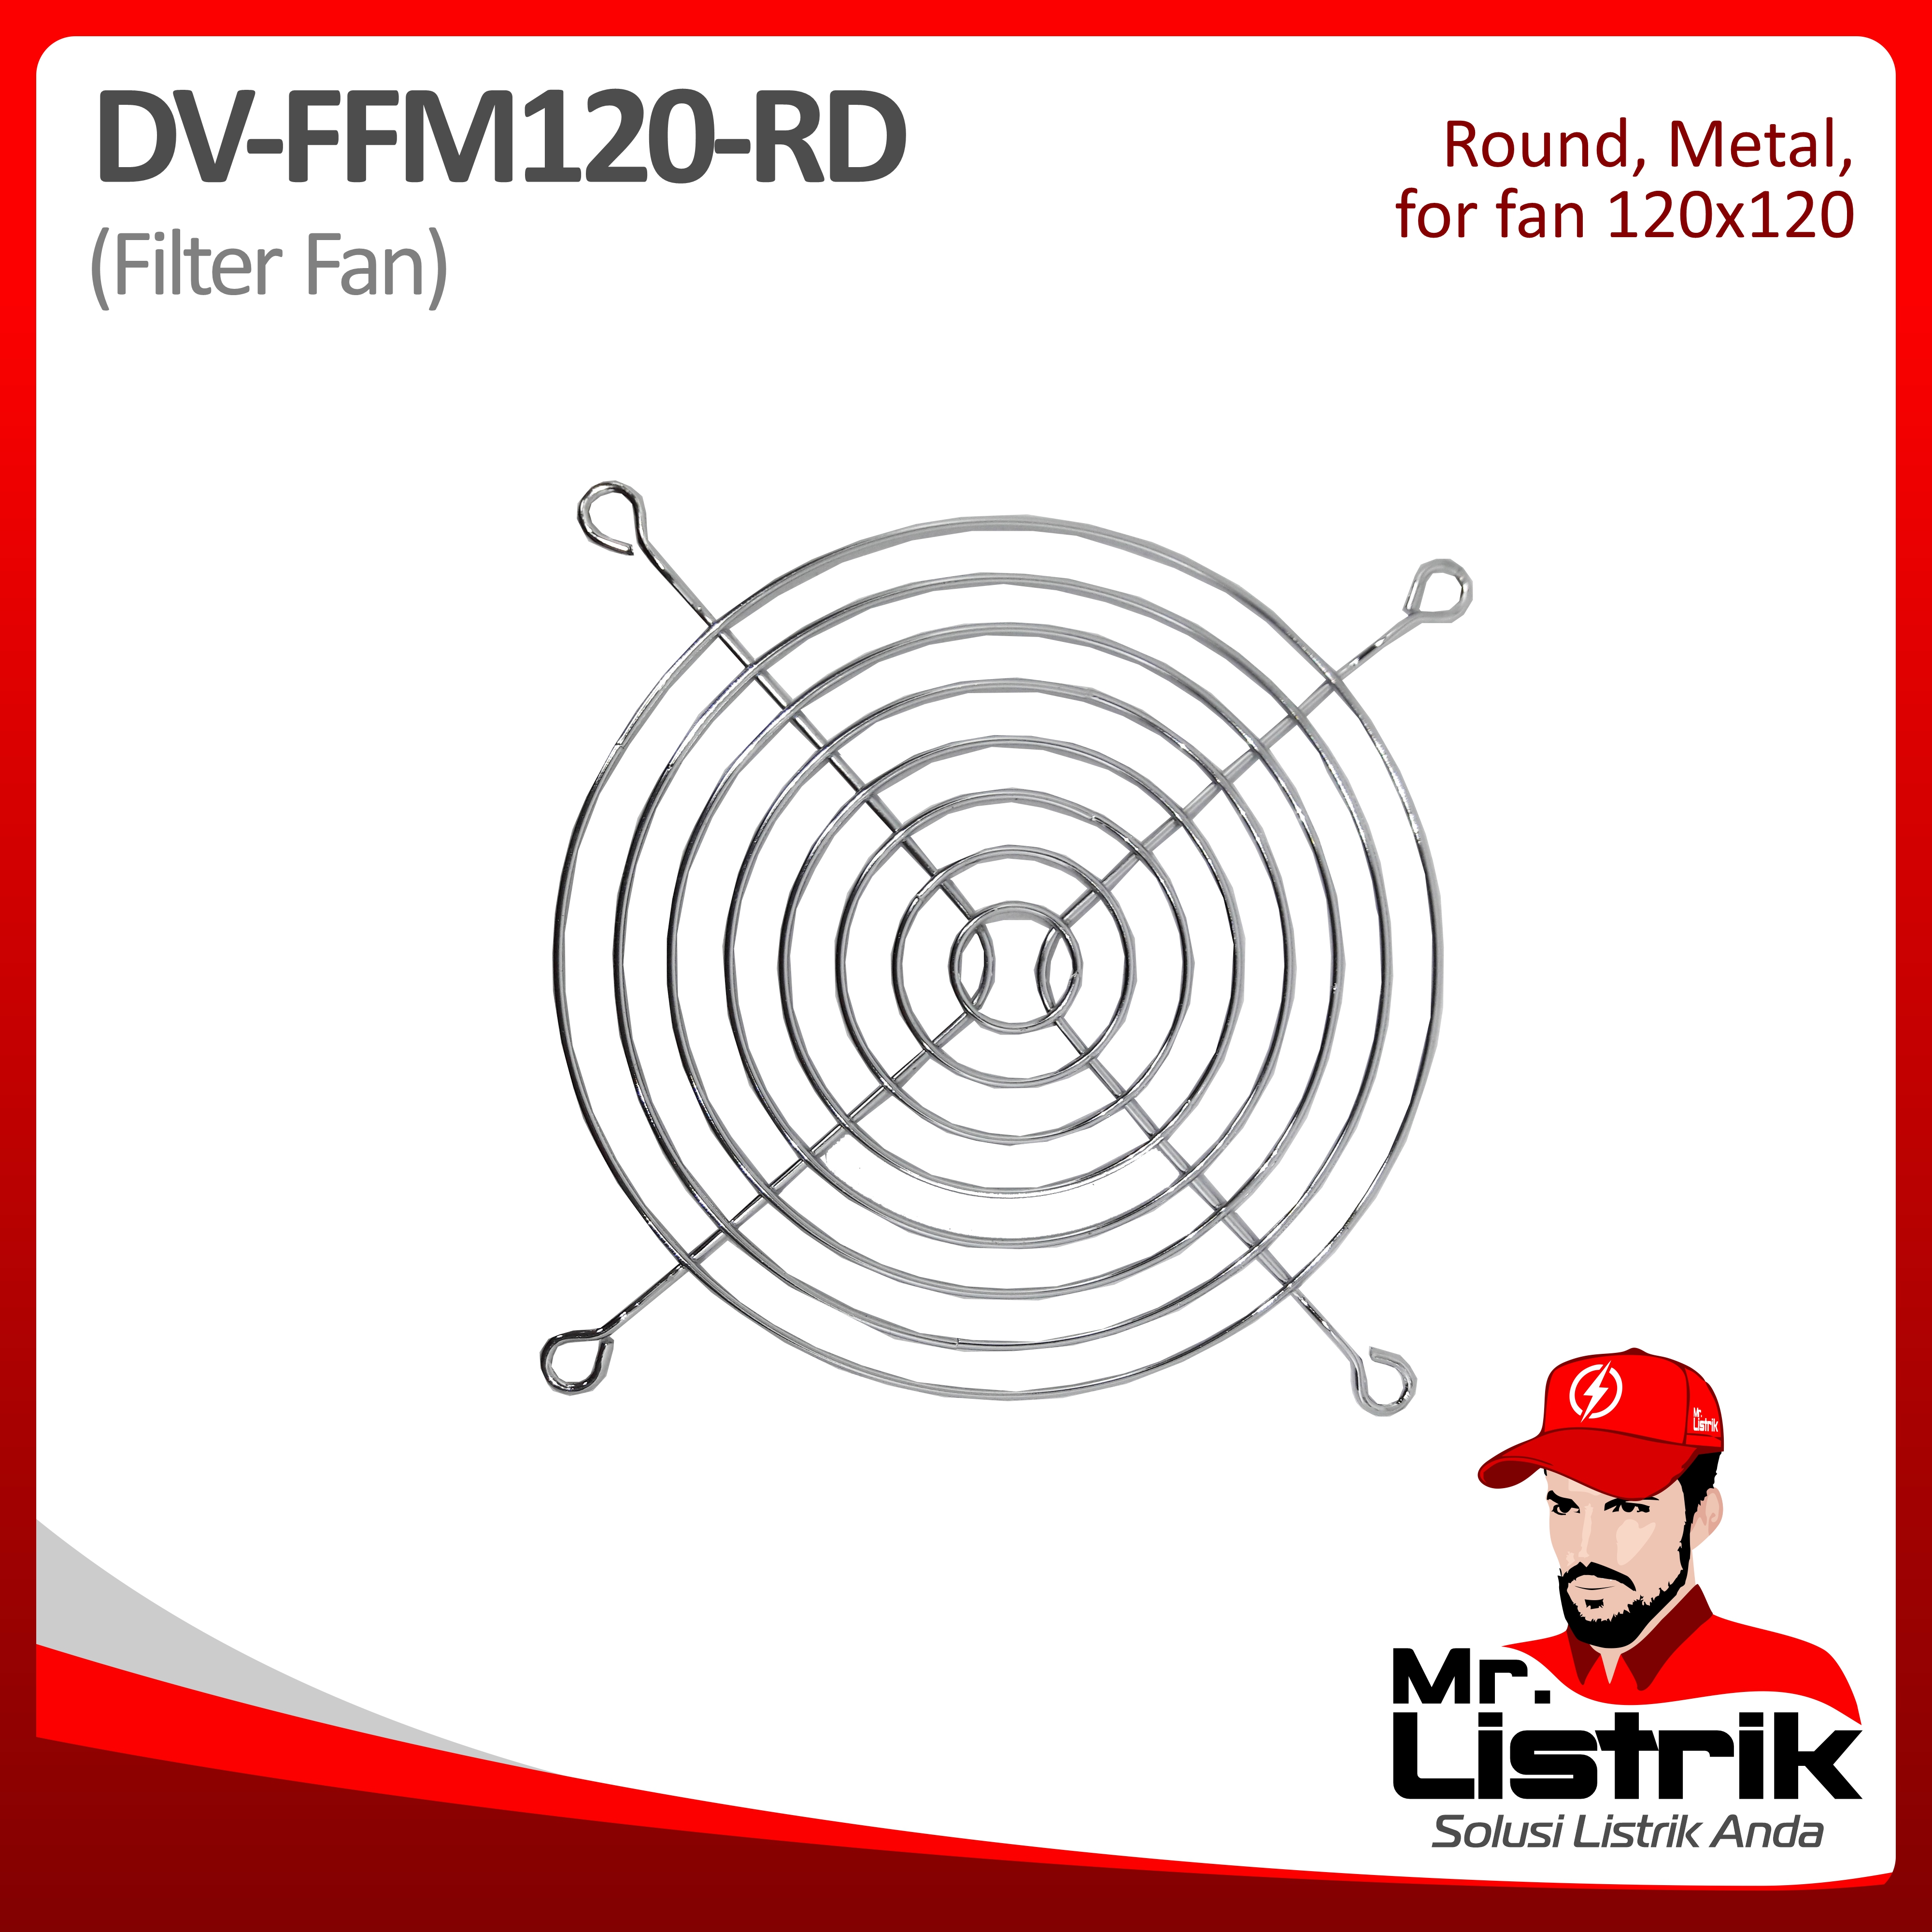 Filter Fan Metal Round For Fan 120x120 DV FFM120-RD